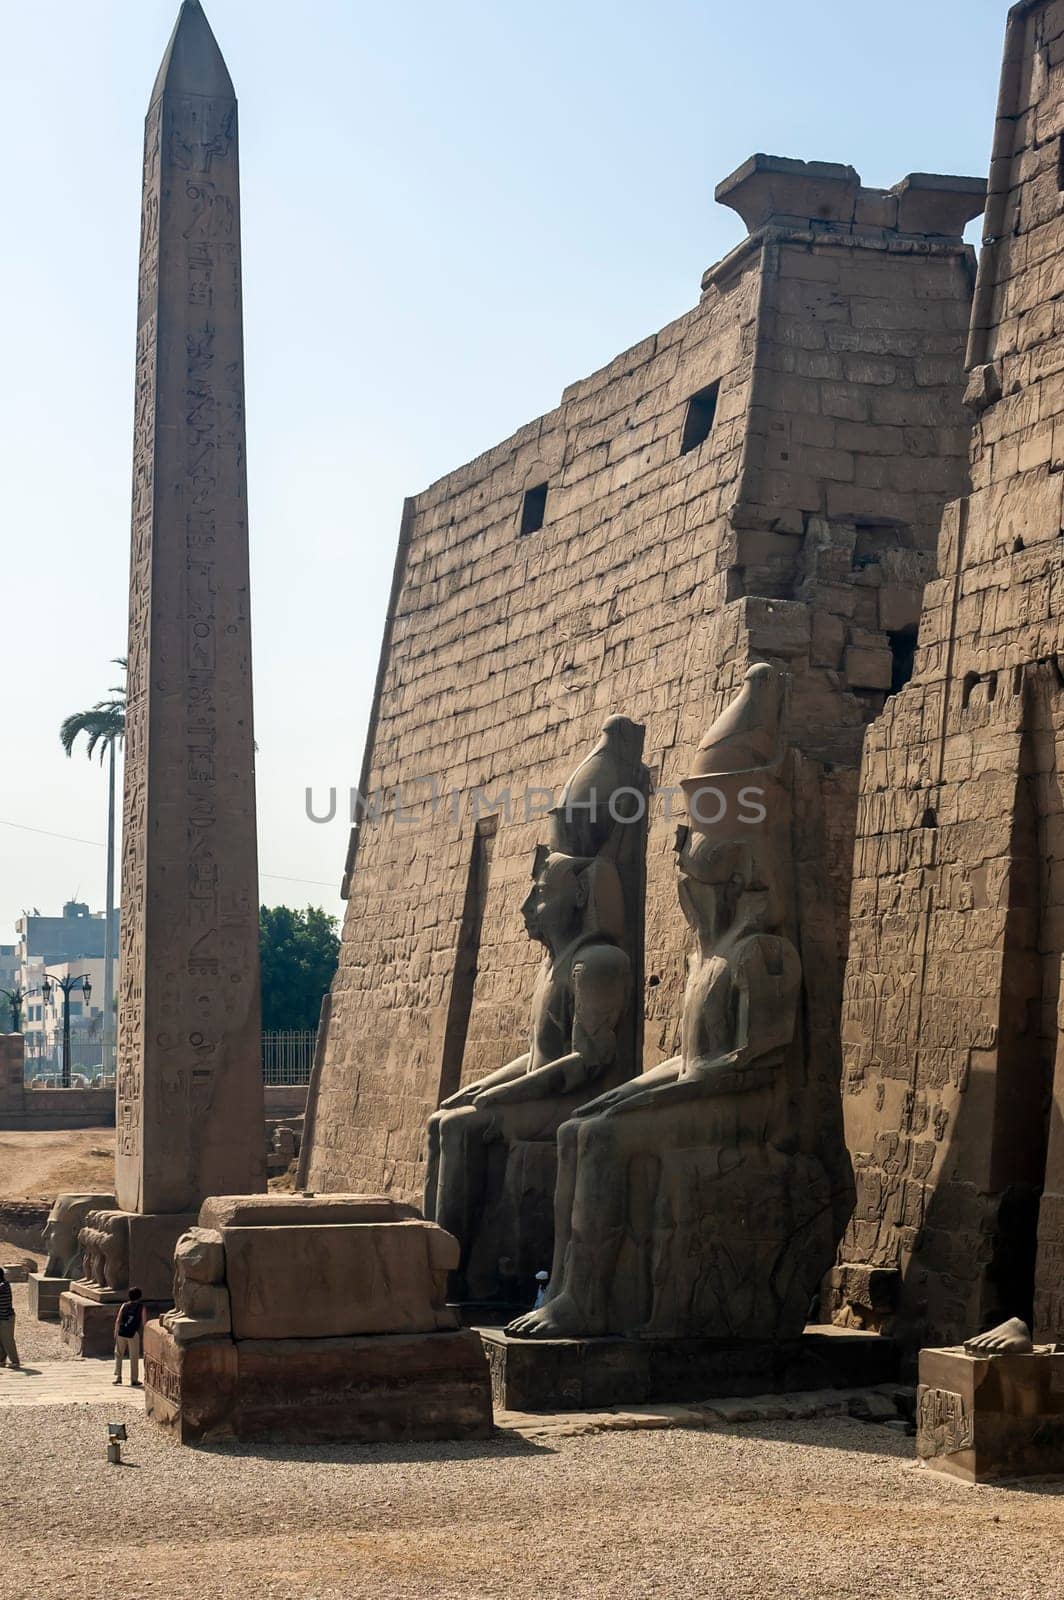 Luxor, Egypt - April 15 2008: The great statues of Ramses II, Karnak, Luxor, Egypt